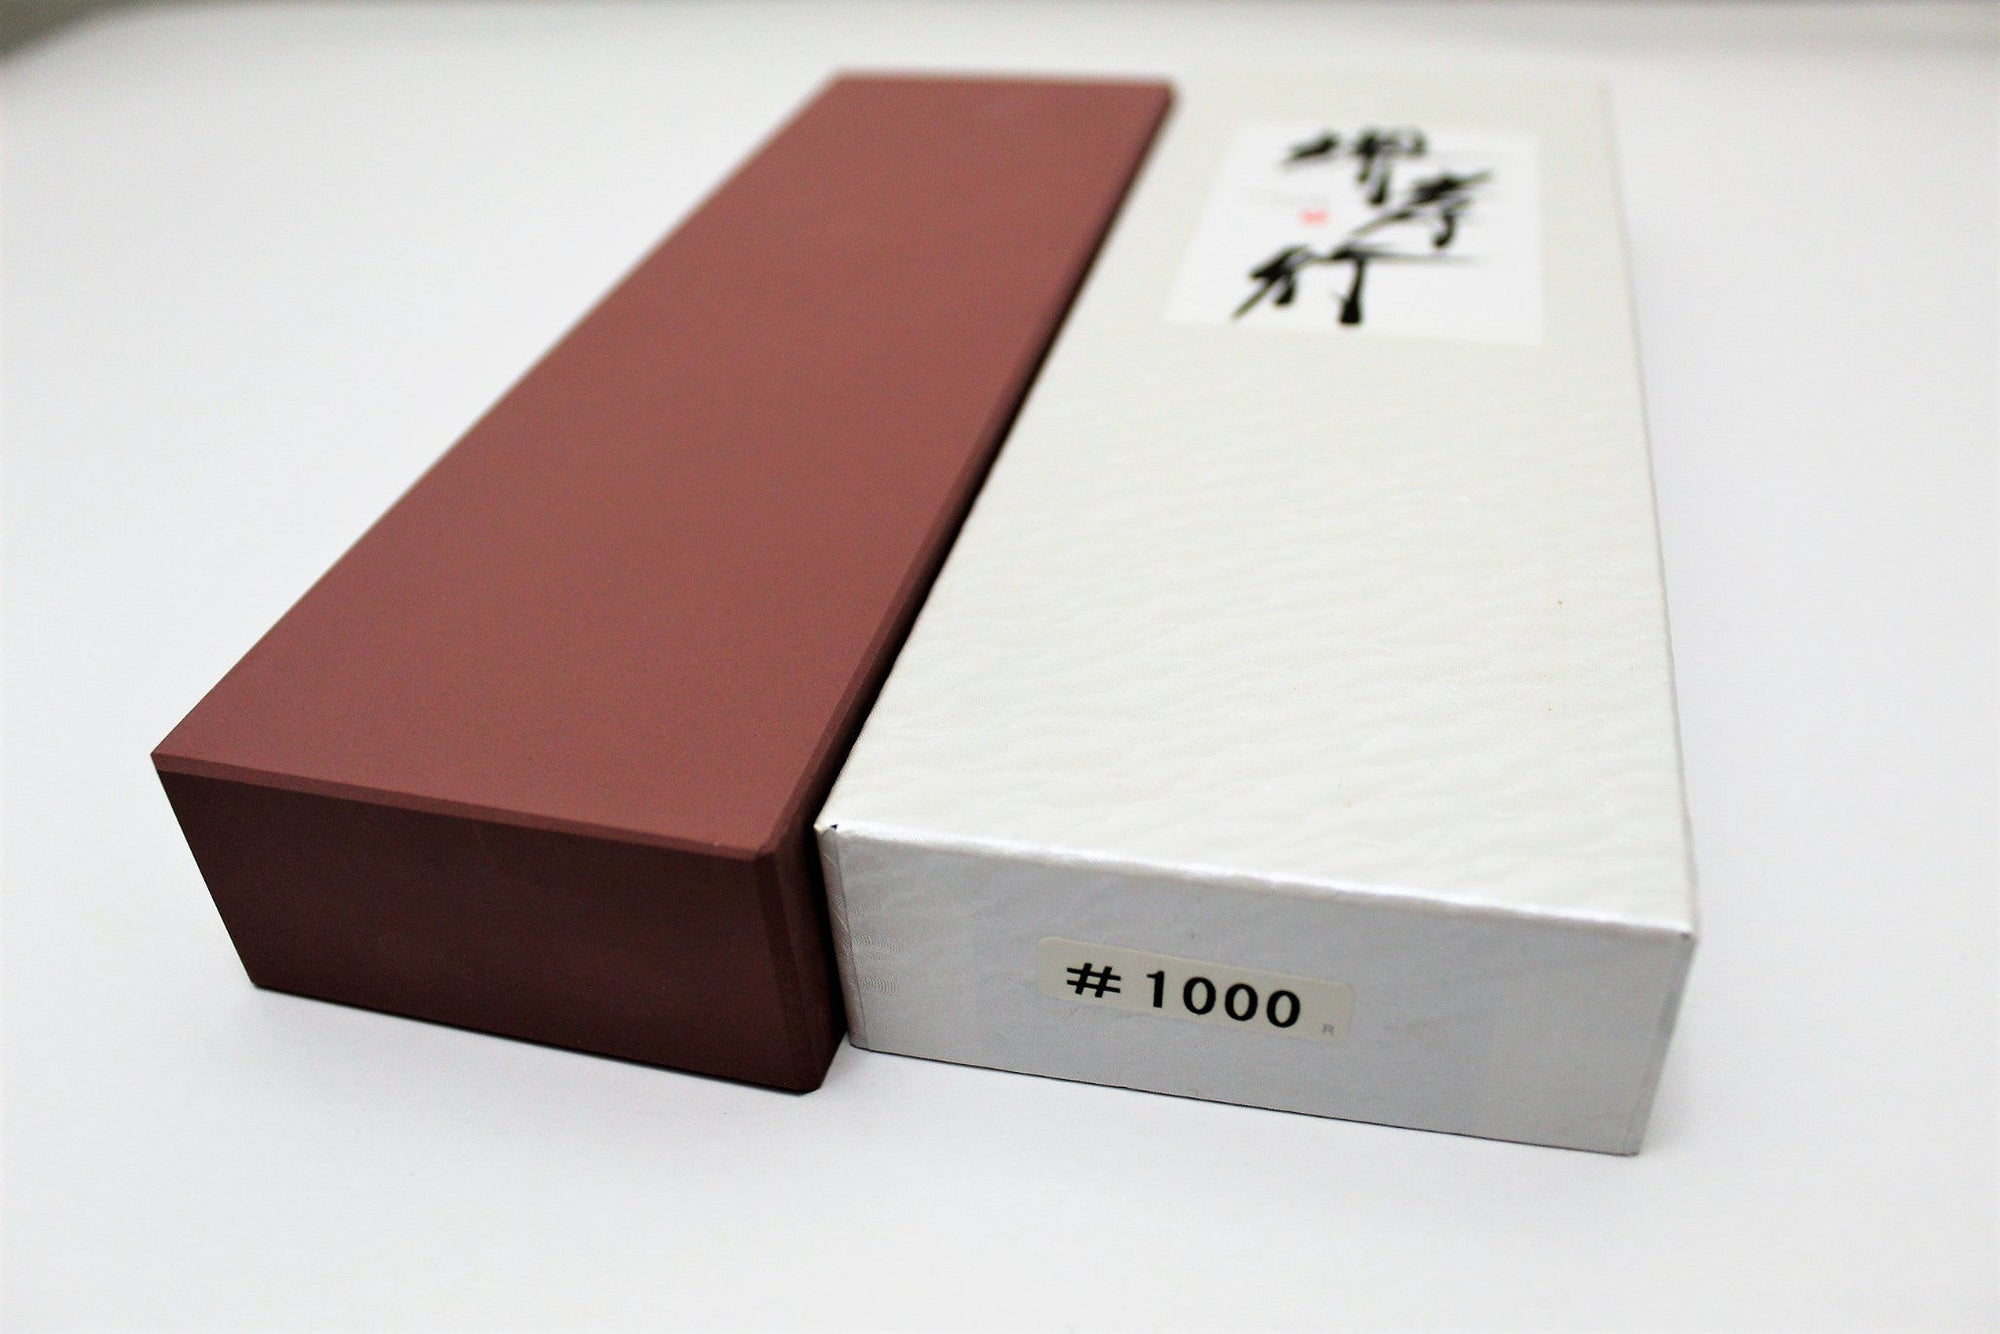 Yoshihiro Professional Grade Toishi Japanese Whetstone Knife Sharpener  Water Stones (#1000 girt)